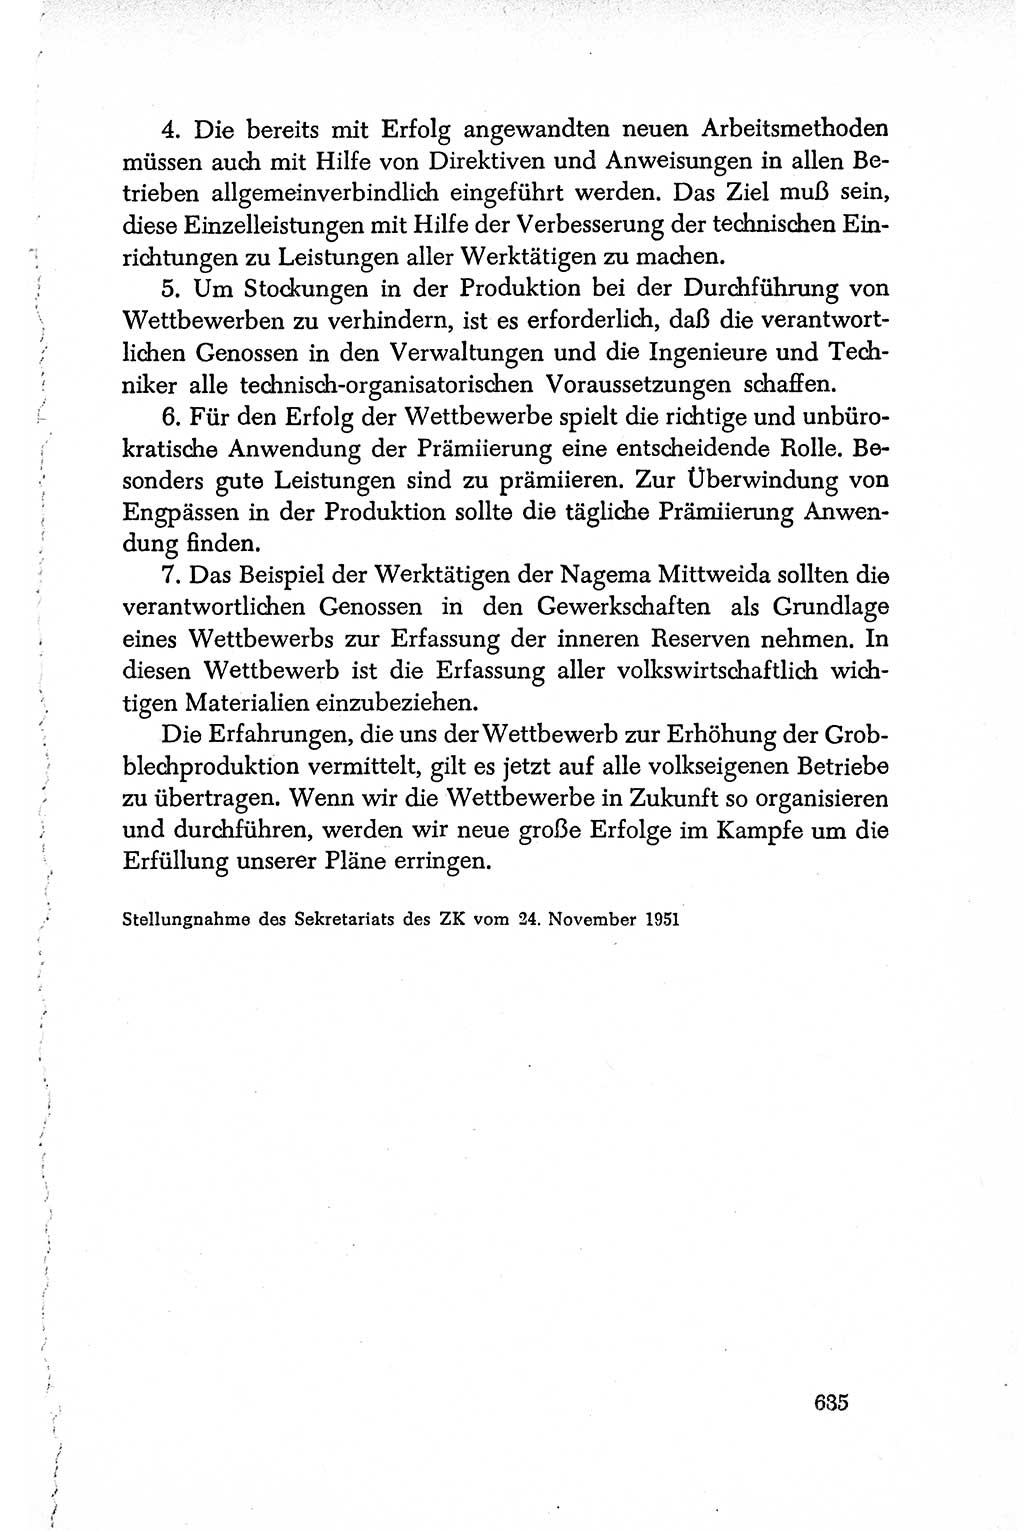 Dokumente der Sozialistischen Einheitspartei Deutschlands (SED) [Deutsche Demokratische Republik (DDR)] 1950-1952, Seite 635 (Dok. SED DDR 1950-1952, S. 635)